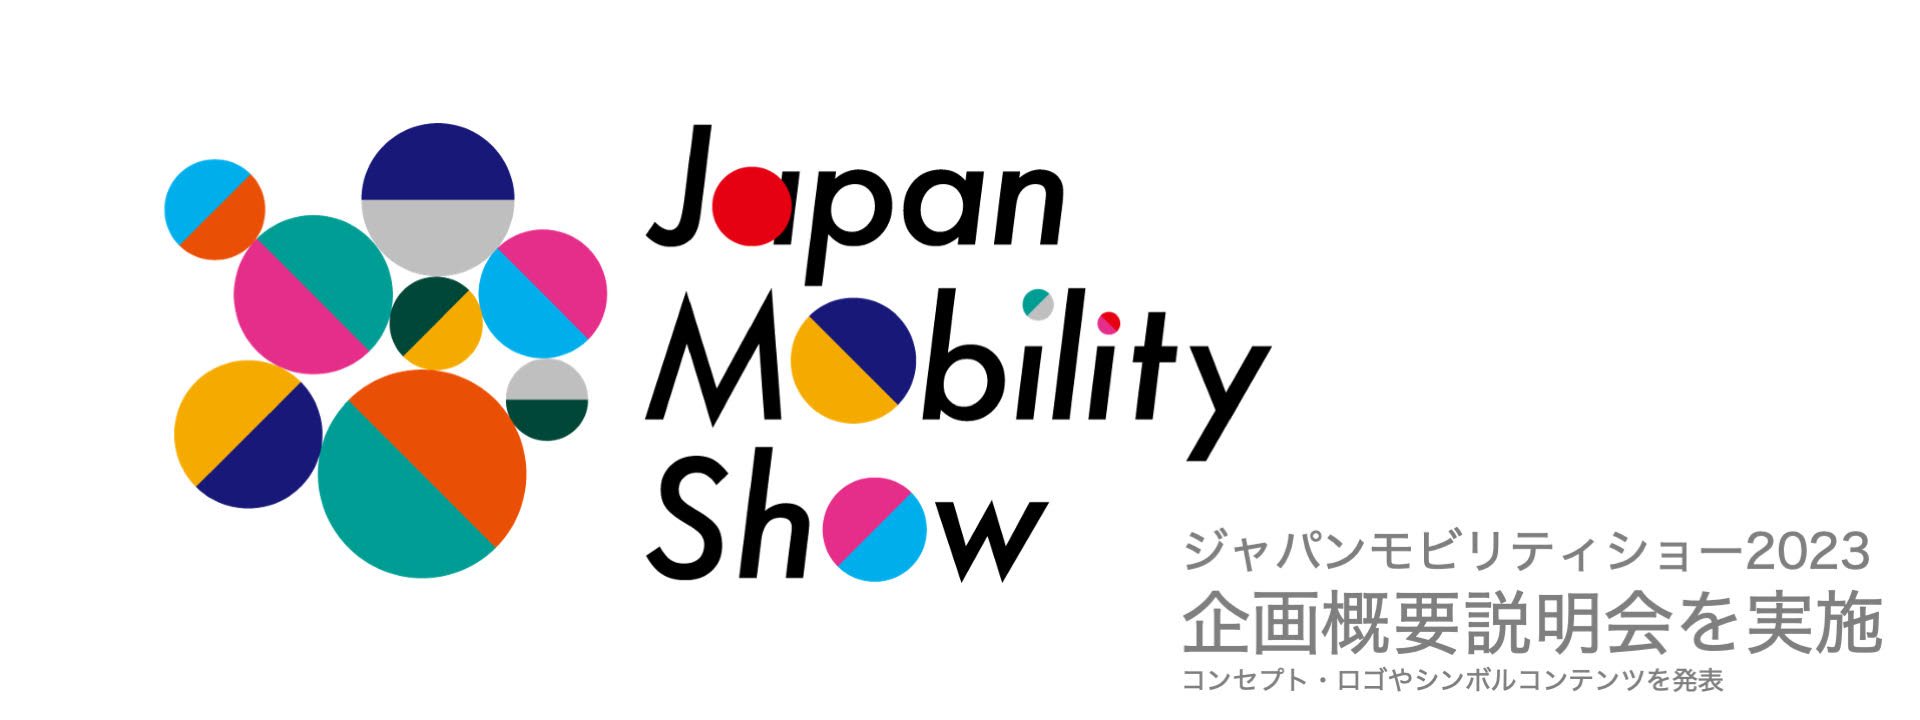 「ジャパンモビリティショー」企画概要説明会を実施